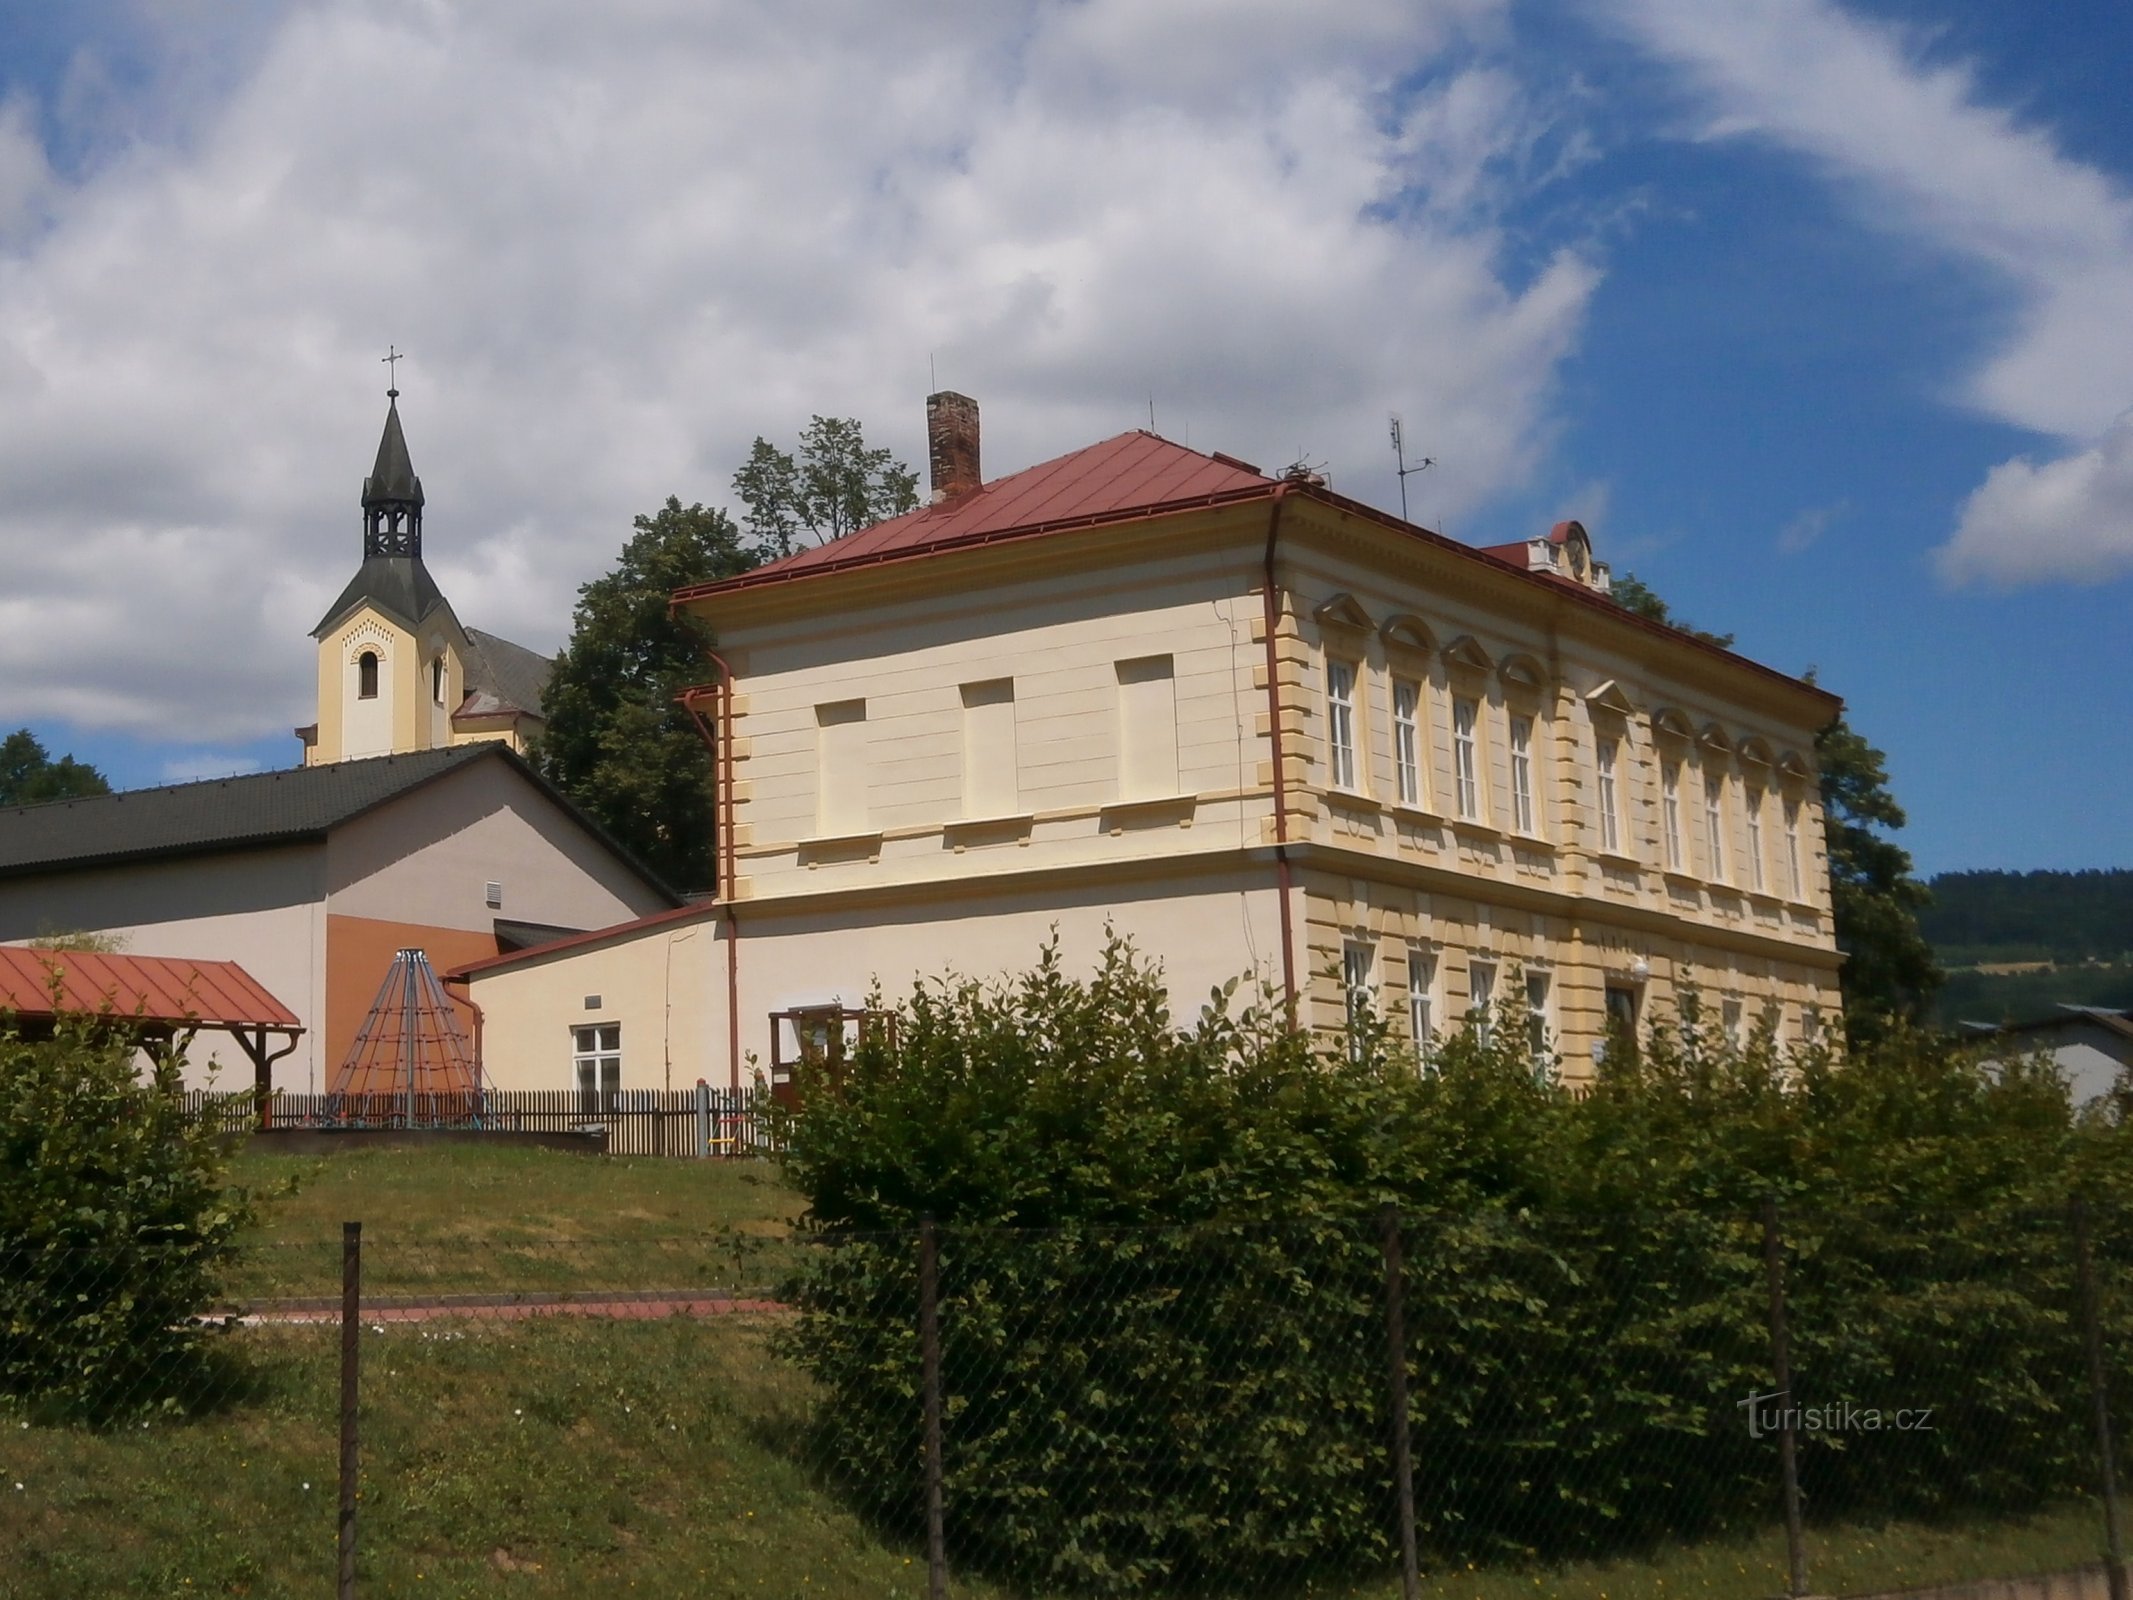 Skola med en kyrka i bakgrunden (Batňovice, 3.7.2017 juli XNUMX)